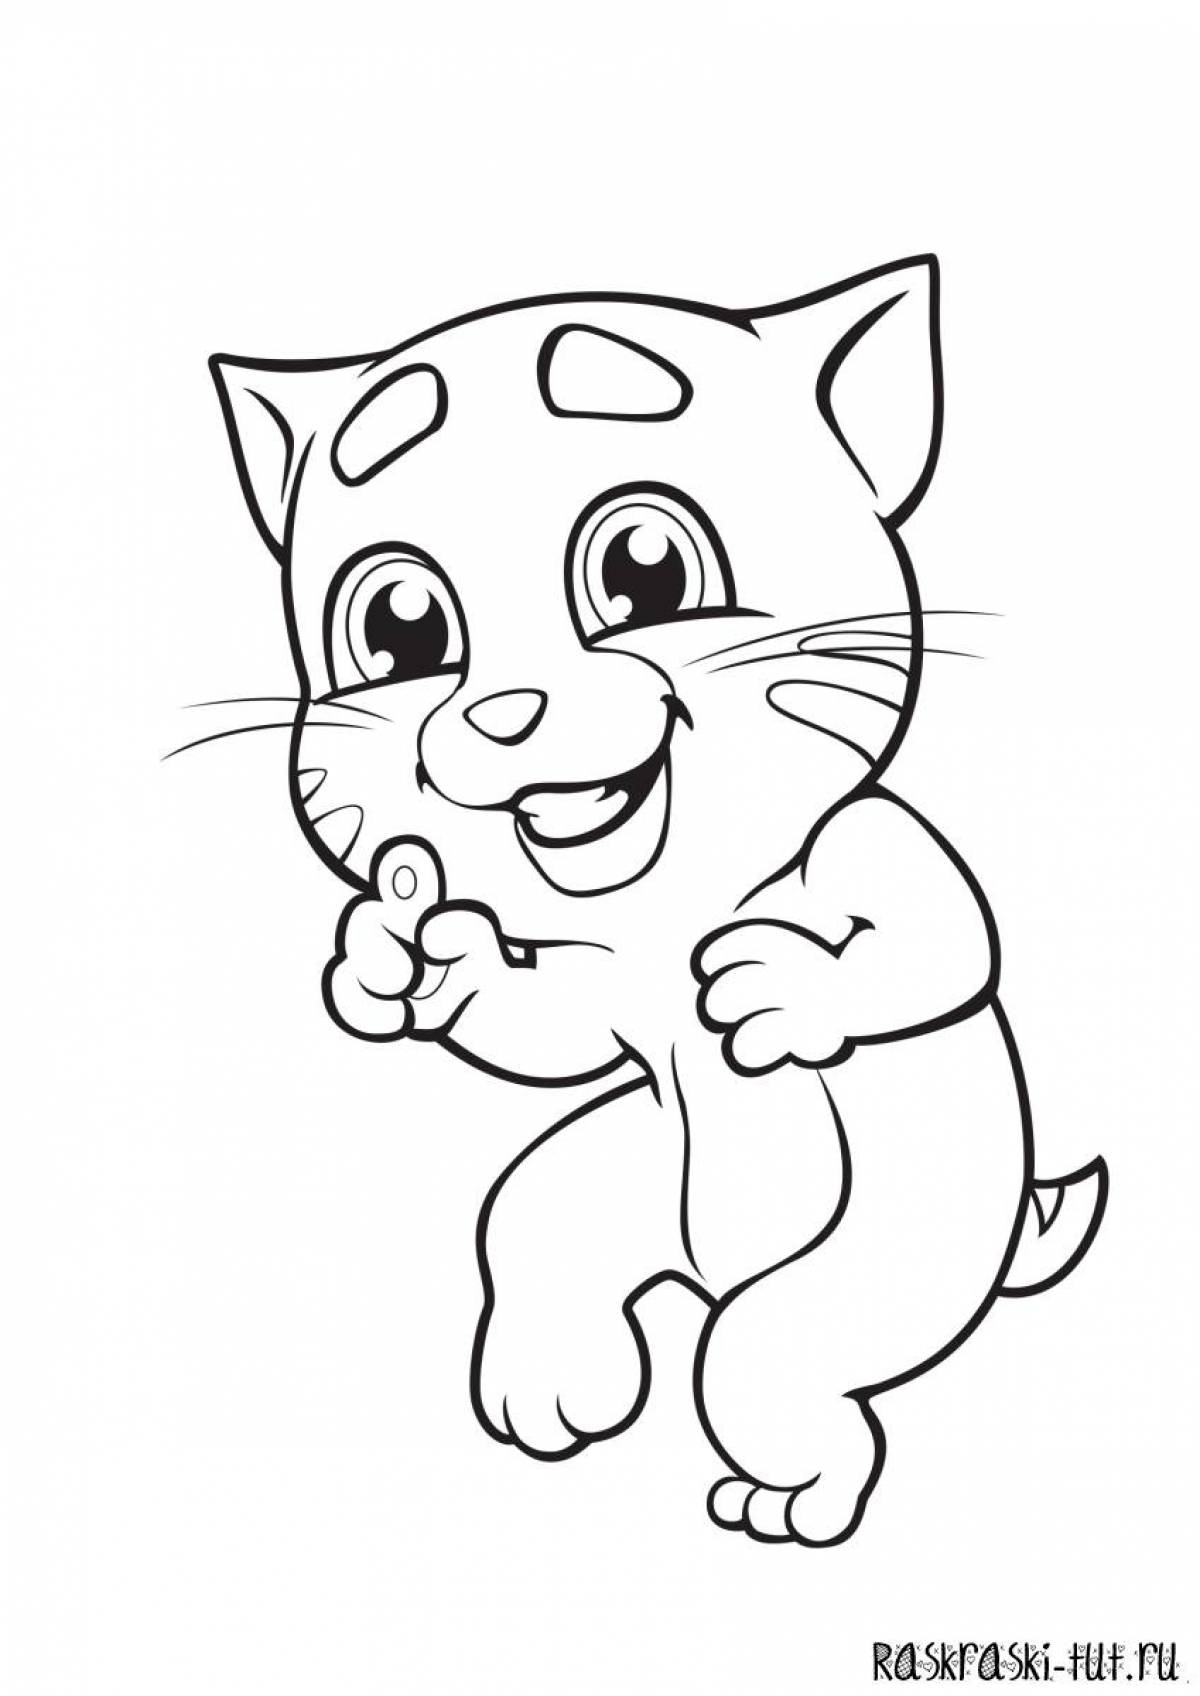 Playful coloring cat bubu